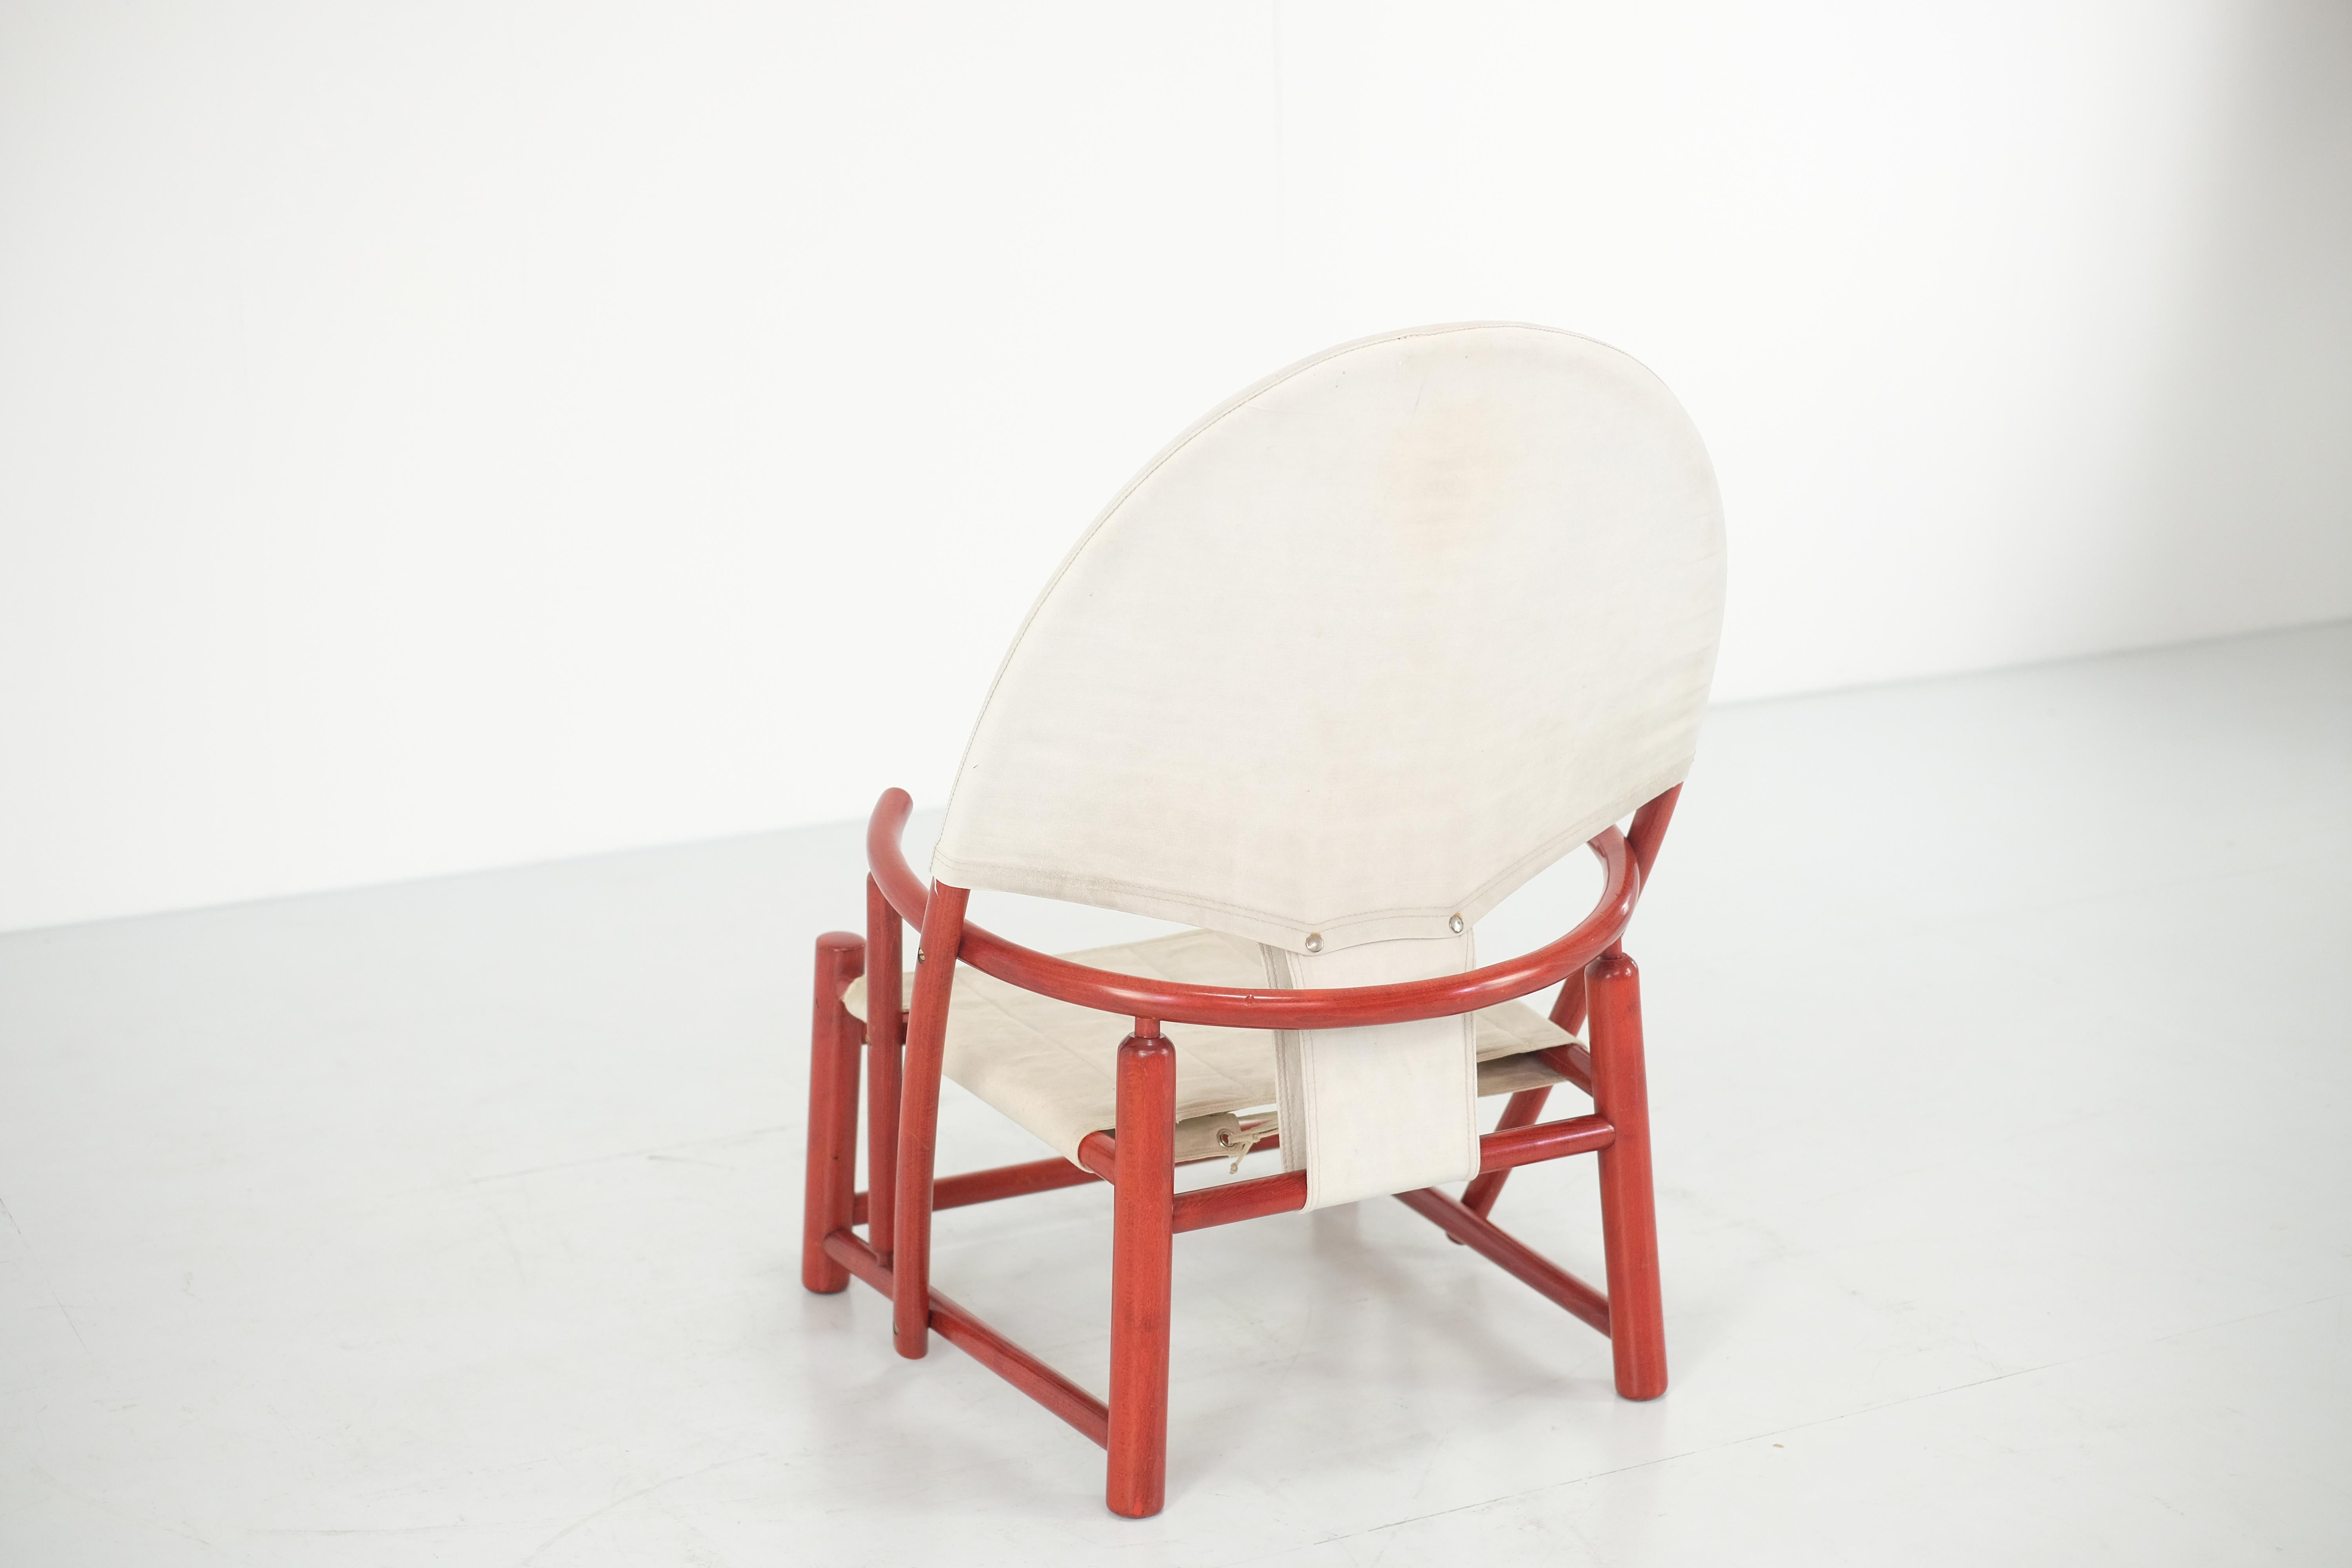 Hoop Chair von Piero Palange & Werther Toffoloni für Germa - 1970er Jahre (Stoff) im Angebot